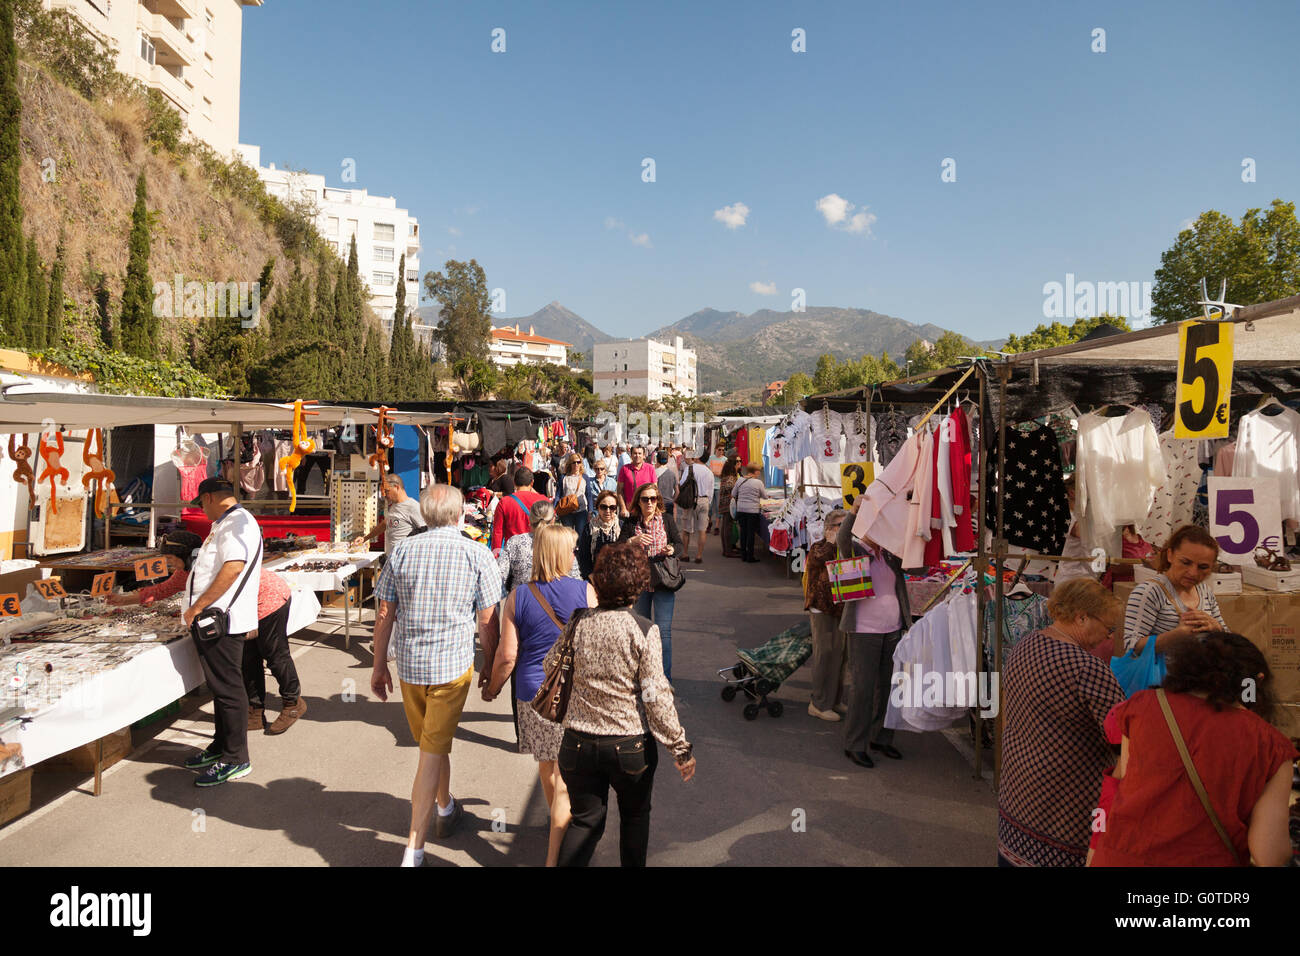 La gente de compras en un mercado español, el mercado al aire libre en Marbella, Costa del Sol, Málaga, Andalucía España Europa Foto de stock